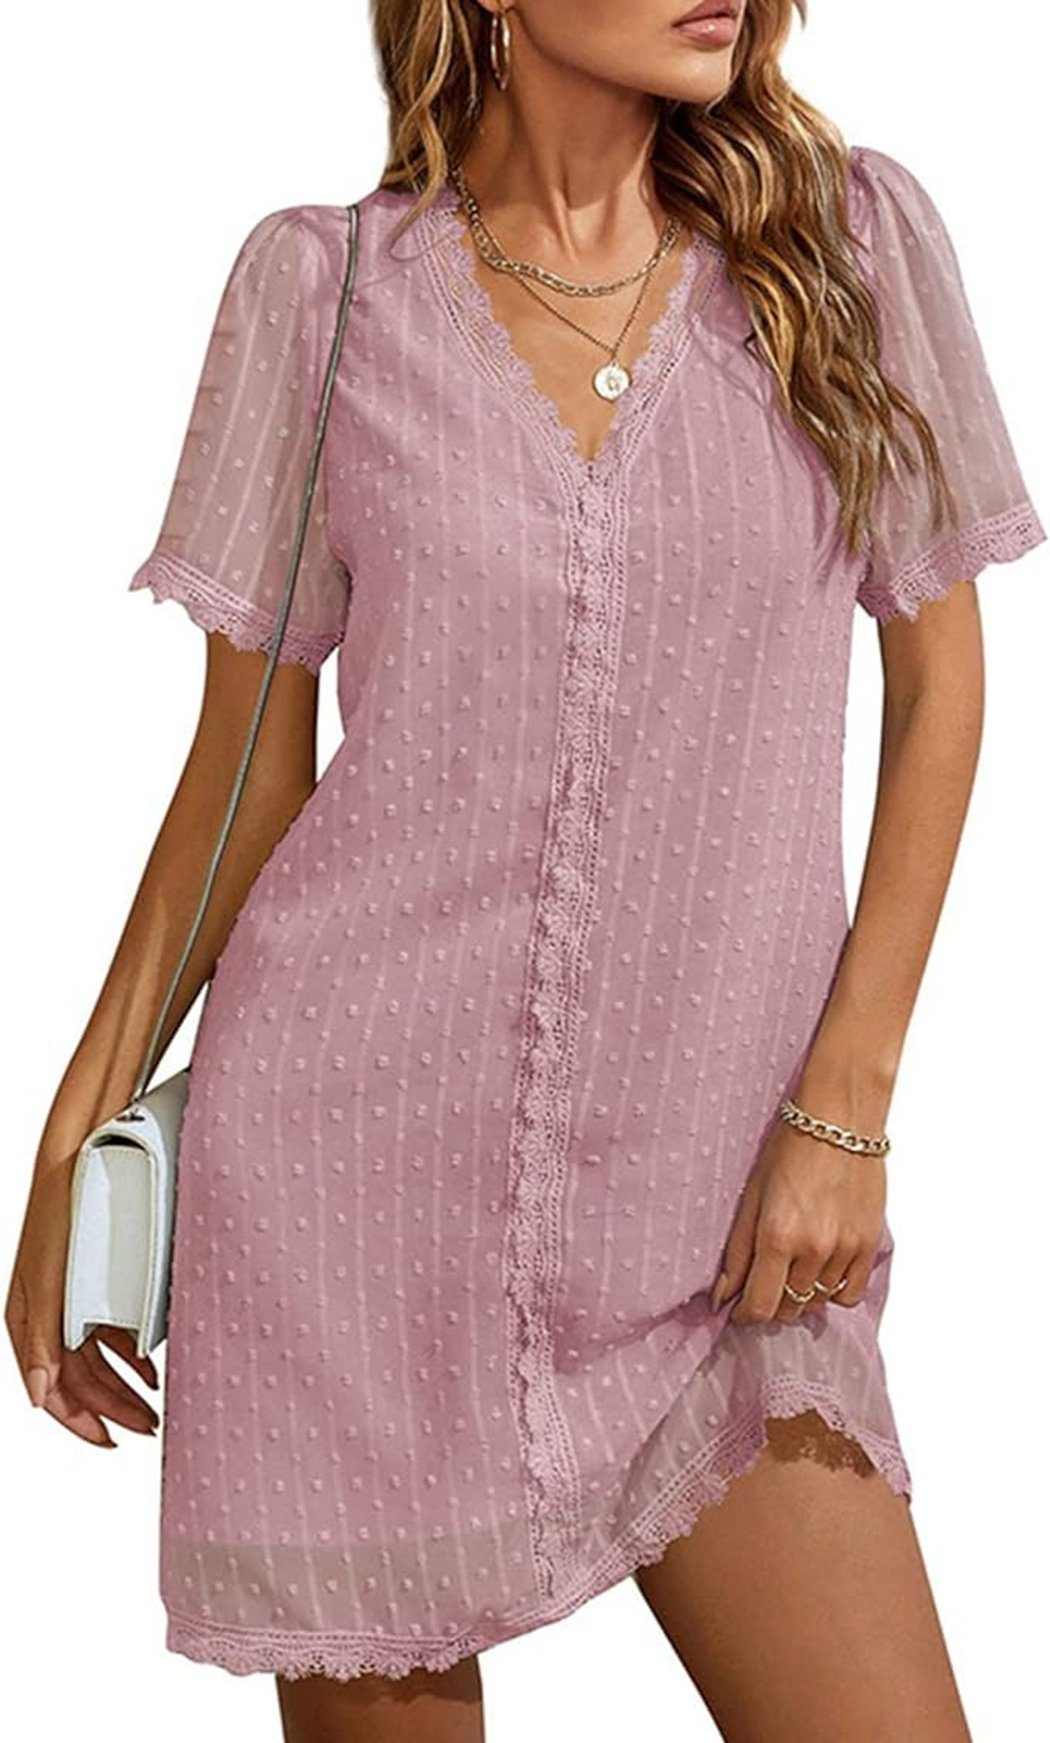 VOCTVTB Shaping-Kleid Spitzenkleid, elegantes, lockeres Freizeitkleid, lässiges Partykleid pink